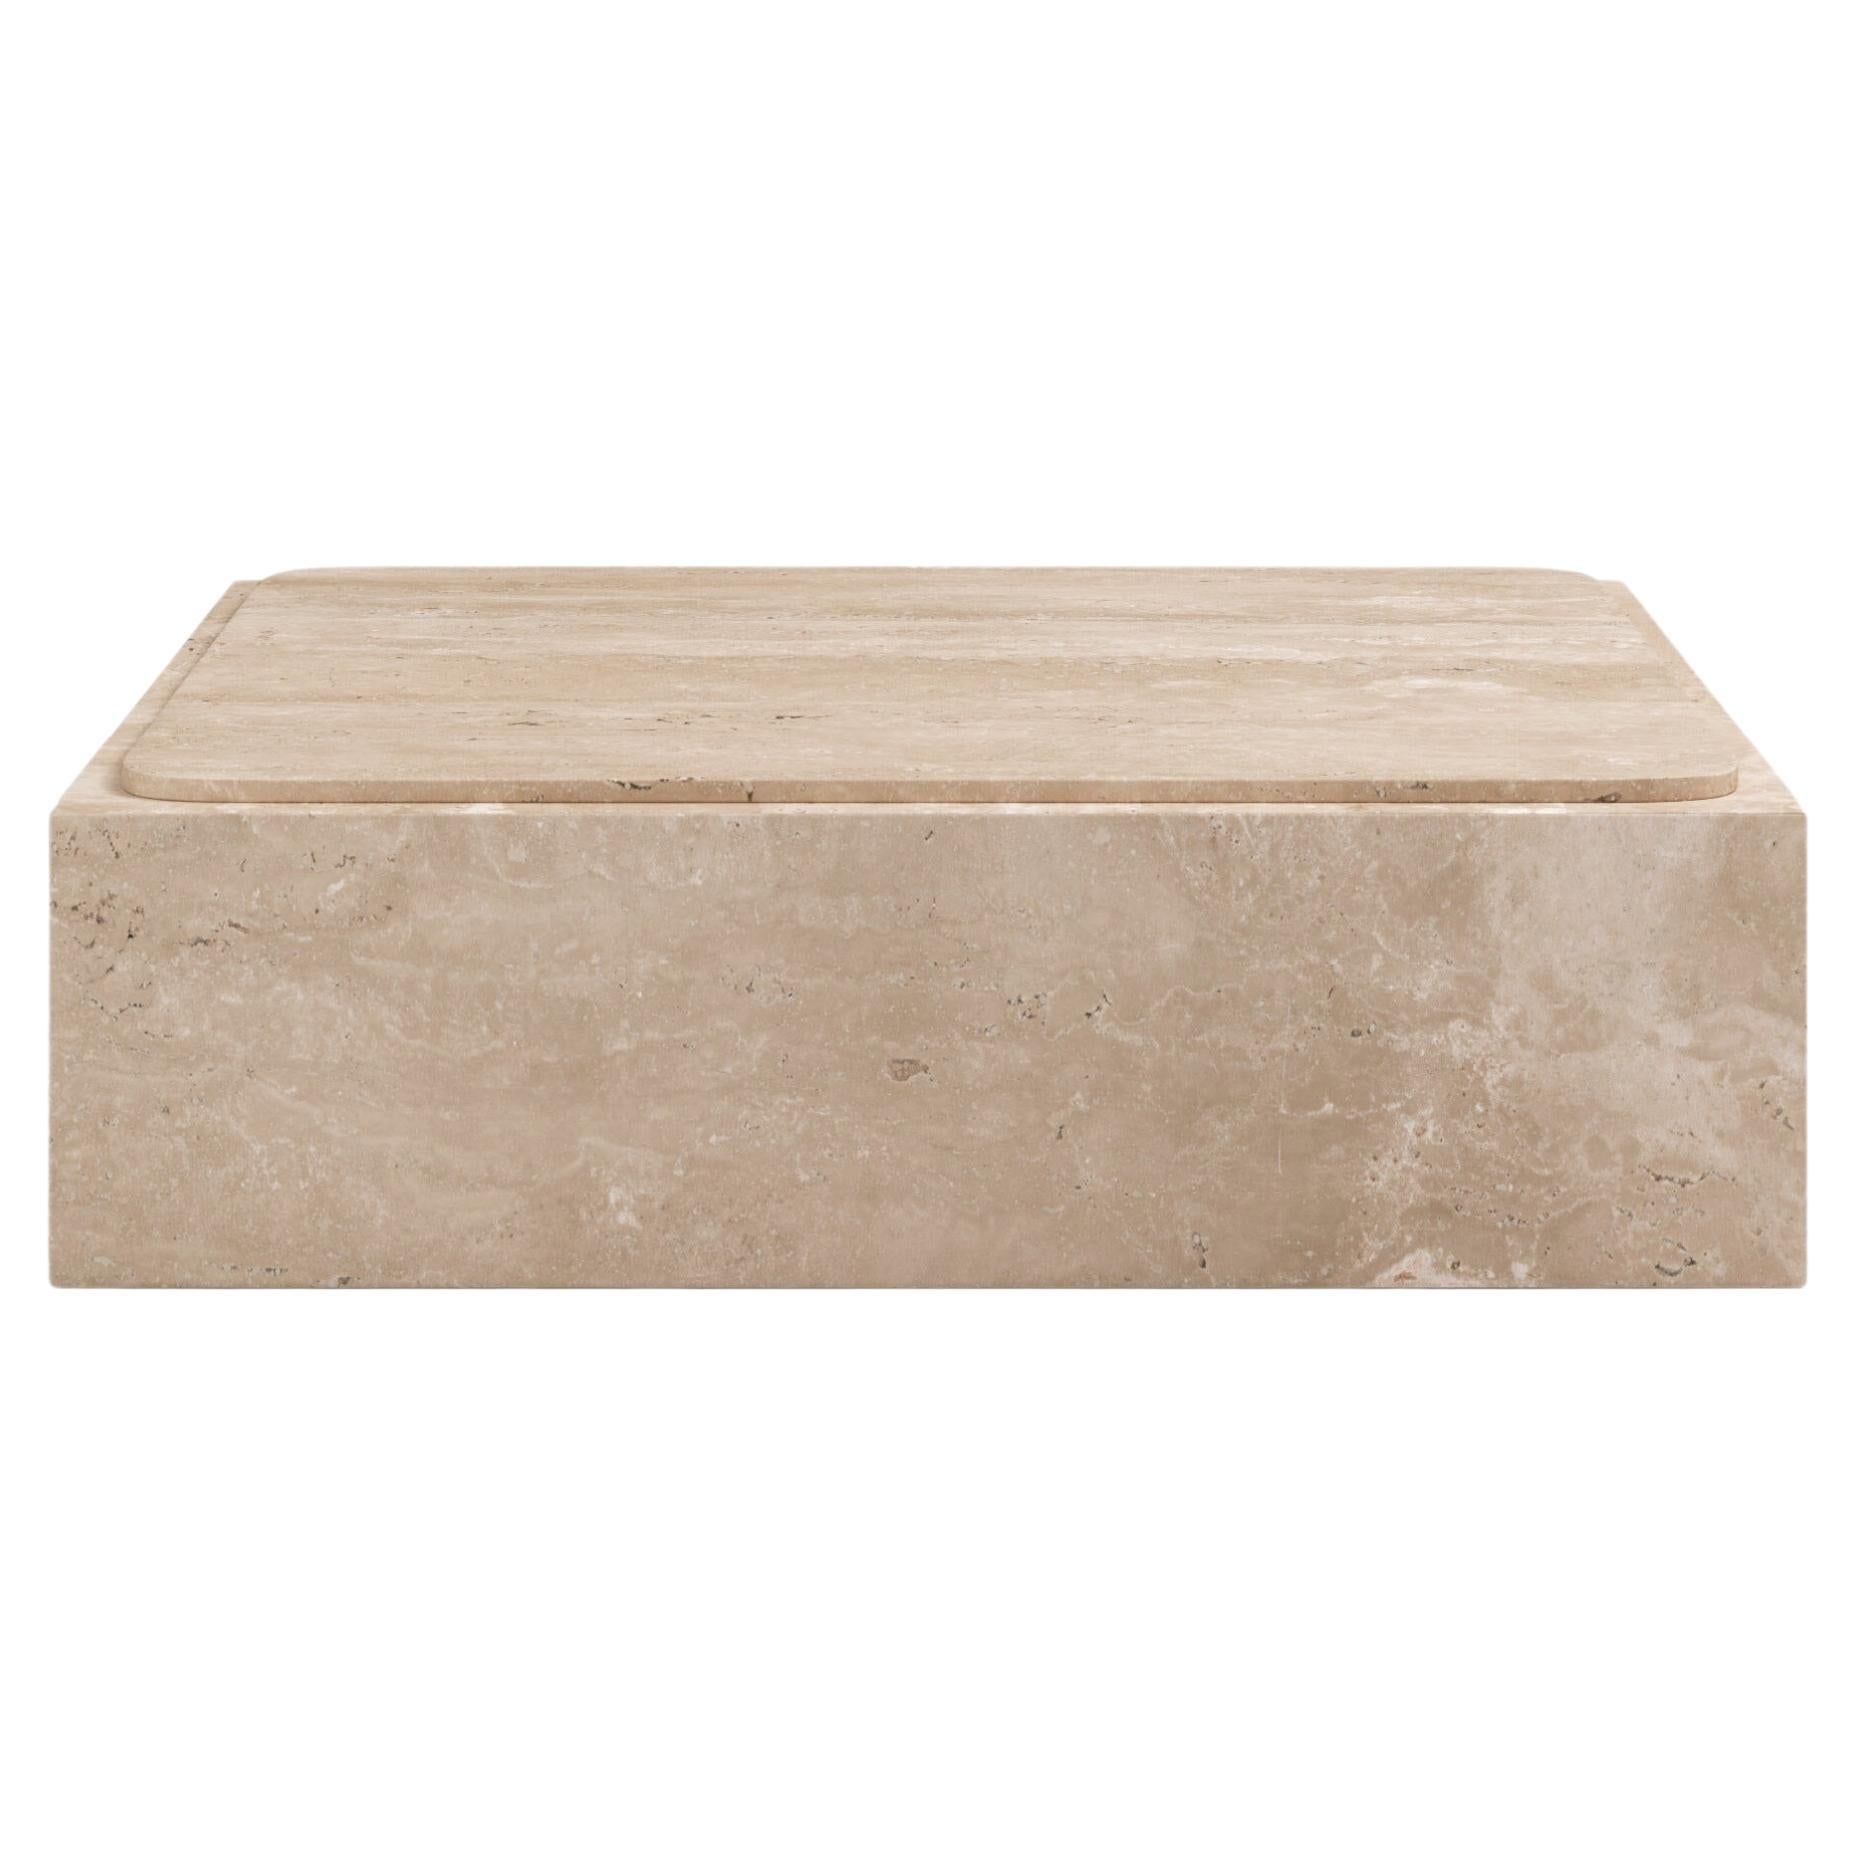 FORM(LA) Cubo Square Plinth Coffee Table 42”L x 42"W x 13”H Travertino Crema VC For Sale